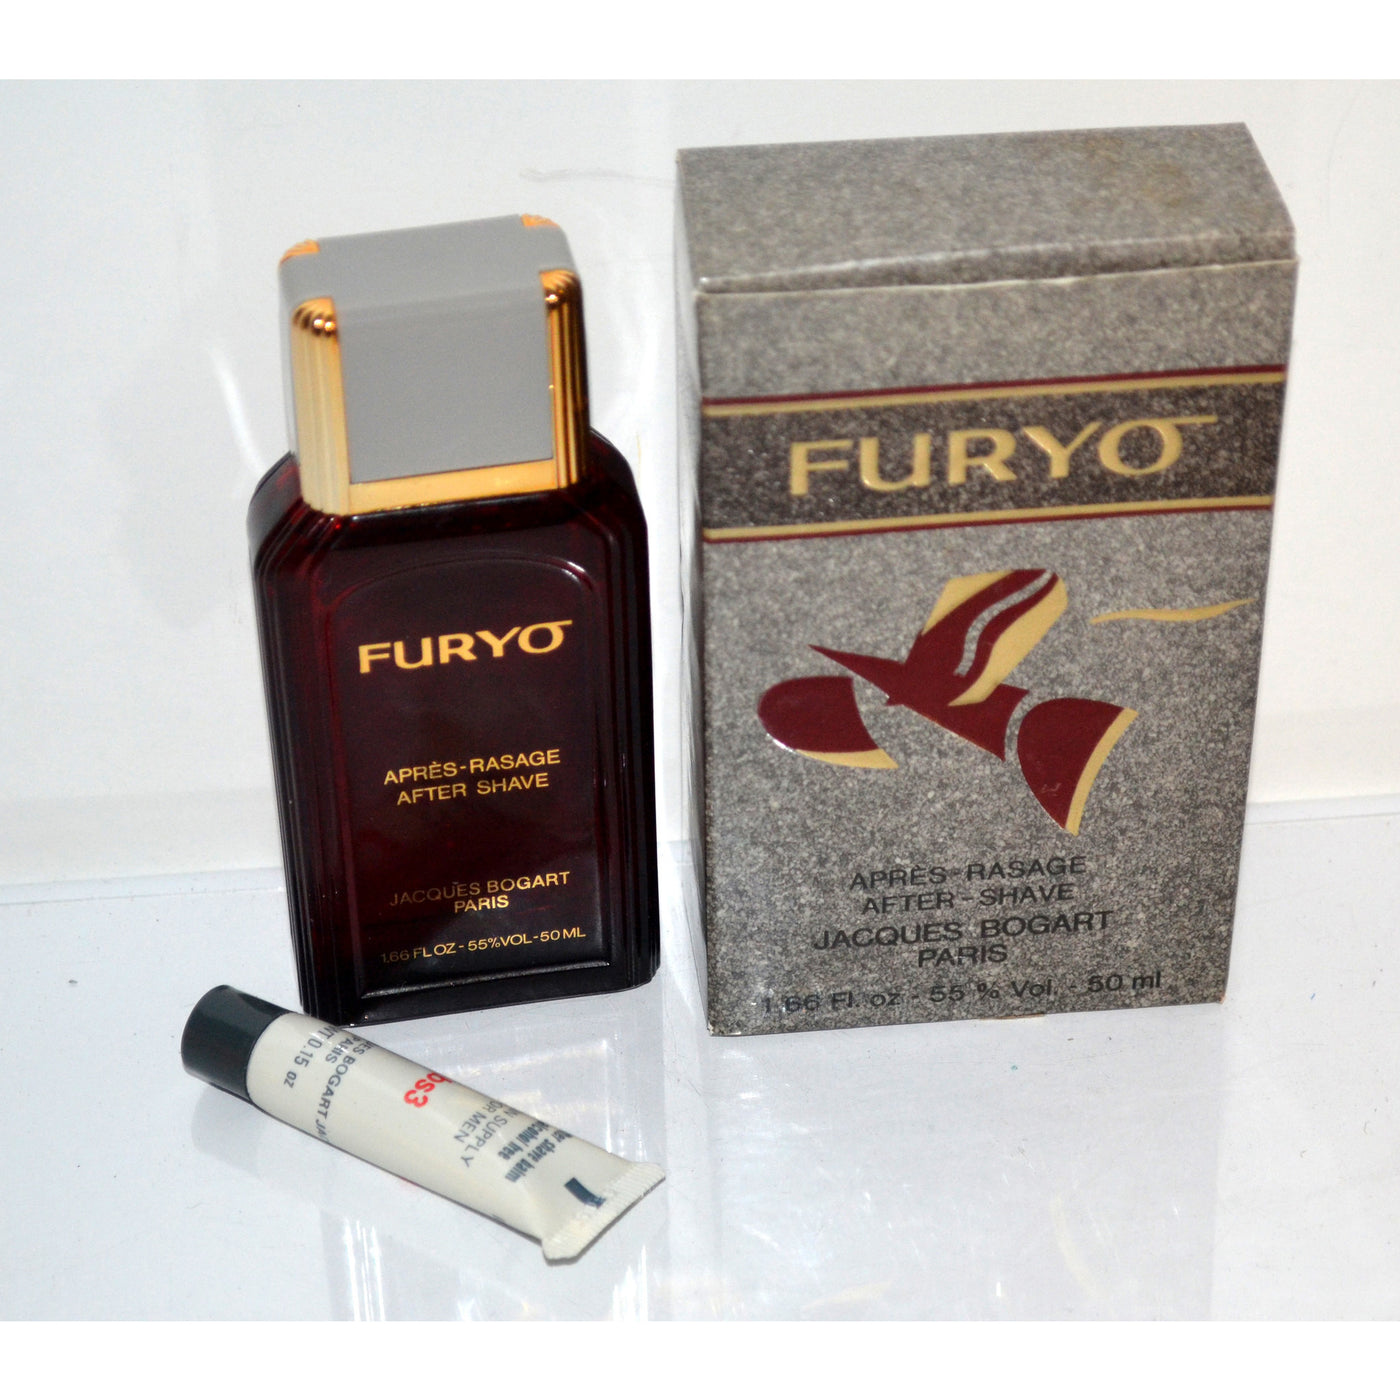 Vintage Furyo After Shave By Jacques Bogart